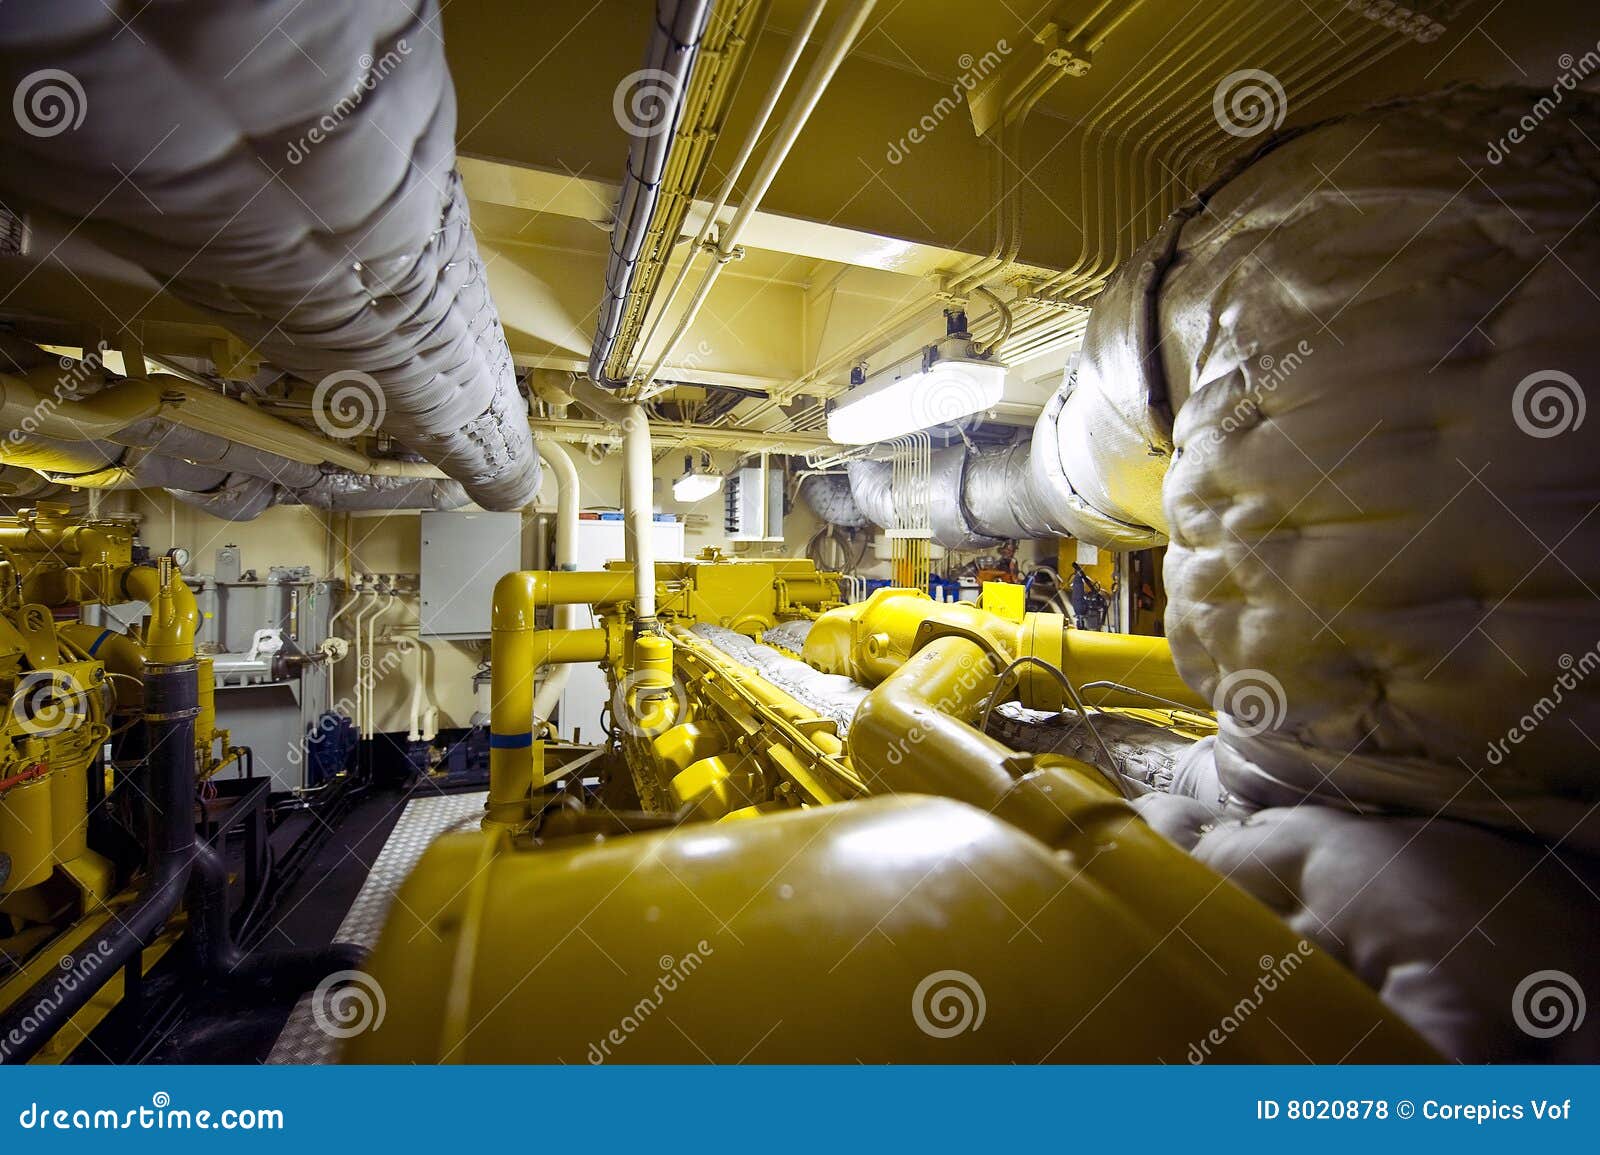 tugboat engine room